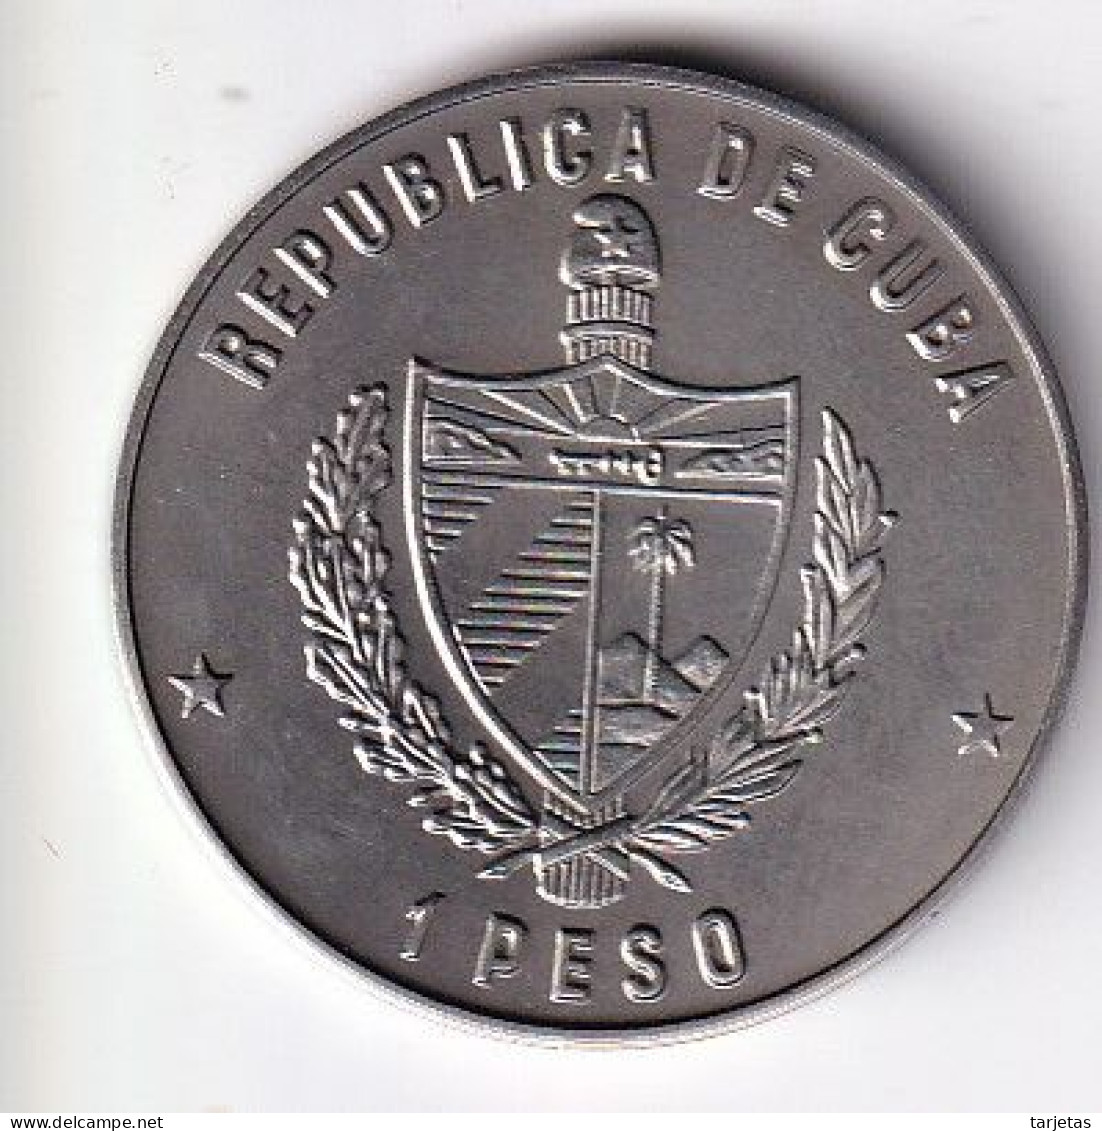 MONEDA DE CUBA DE 1 PESO DEL AÑO 1986 AÑO INTERNACIONAL DE LA PAZ (COIN)  (NUEVA - UNC) - Kuba